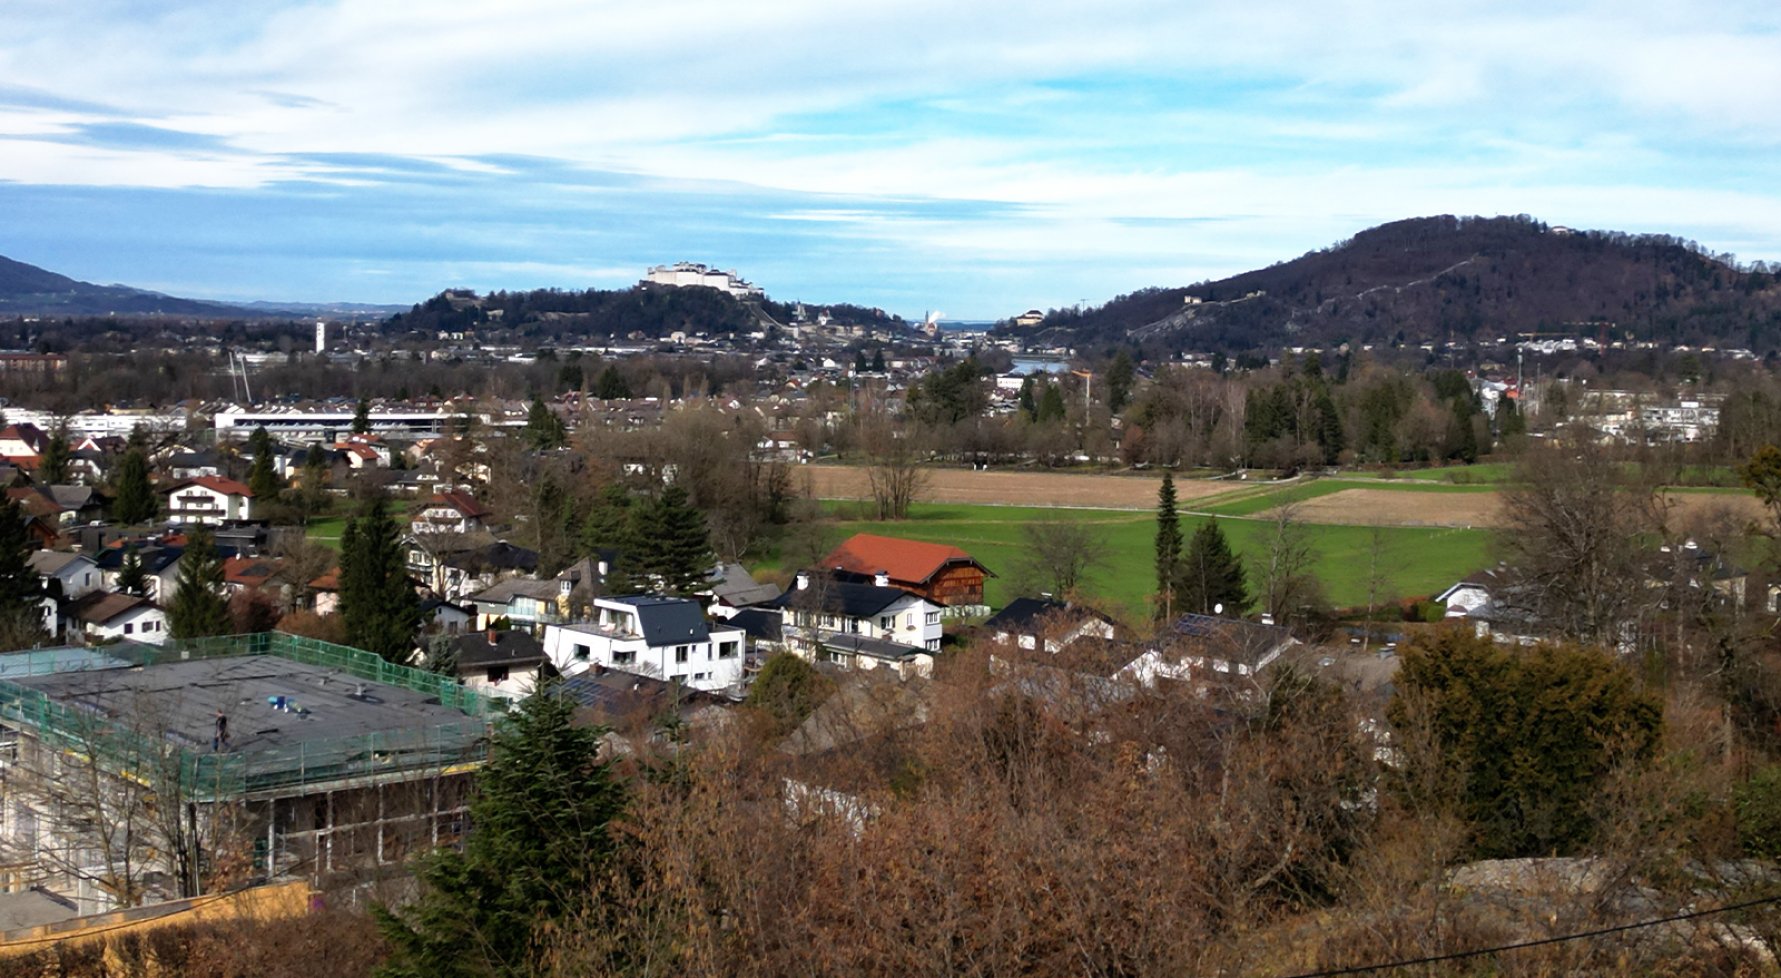 Immobilie in 5061 Salzburg - Elsbethen: Premiumgrundstück in Salzburger Villengegend! - bild 1